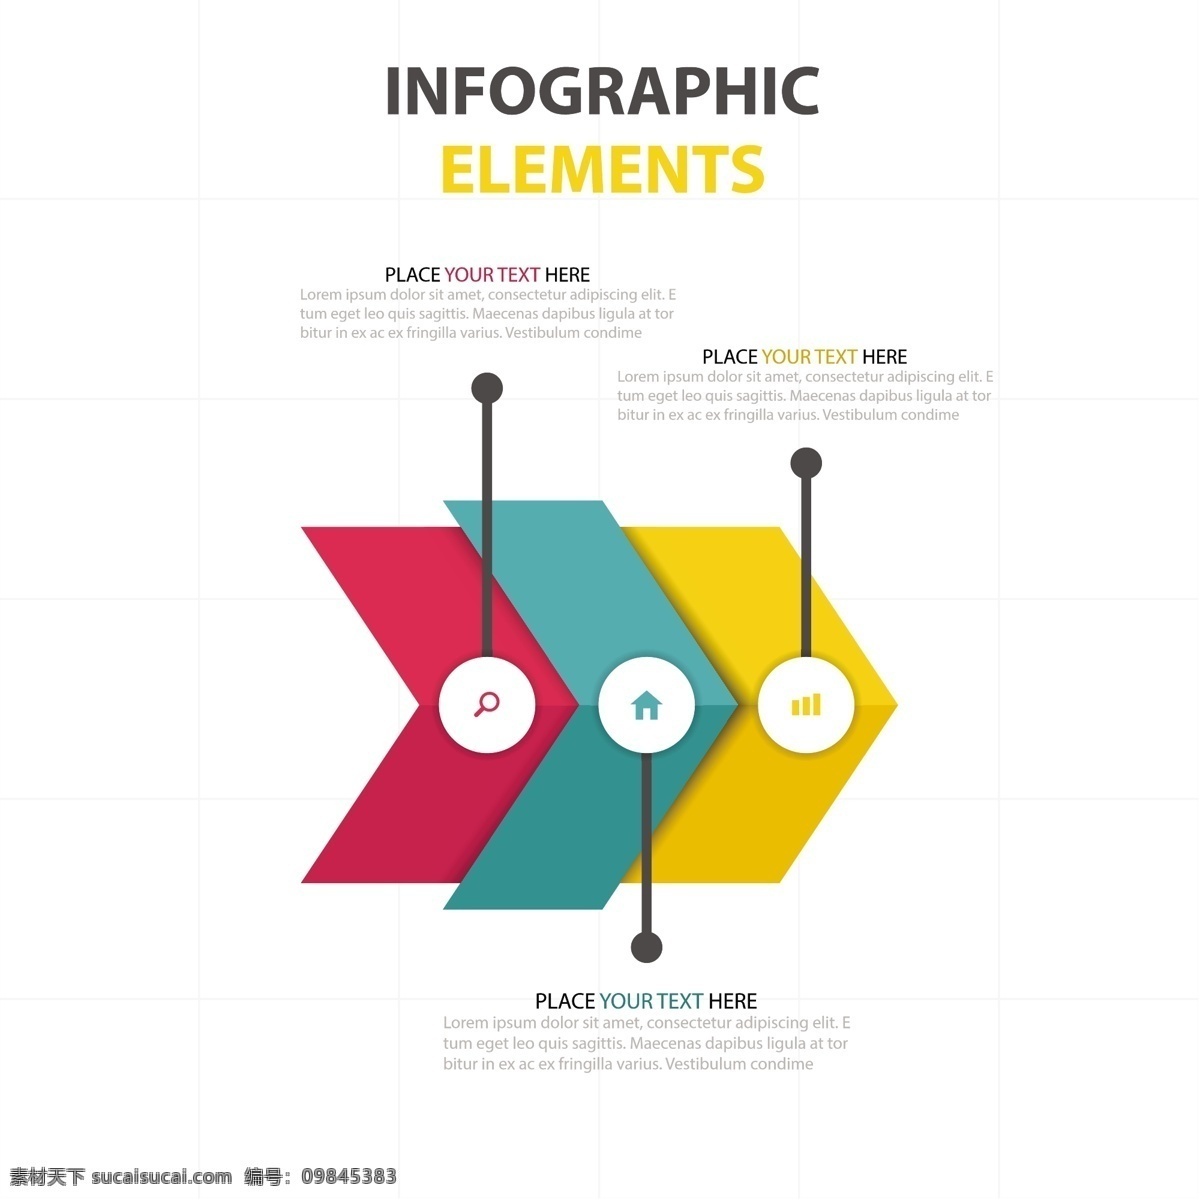 三个 彩色 箭头 图表 业务模板 图形 营销 流程 数据 信息 步骤 生长 发展 进化 进步 选择 前进 相